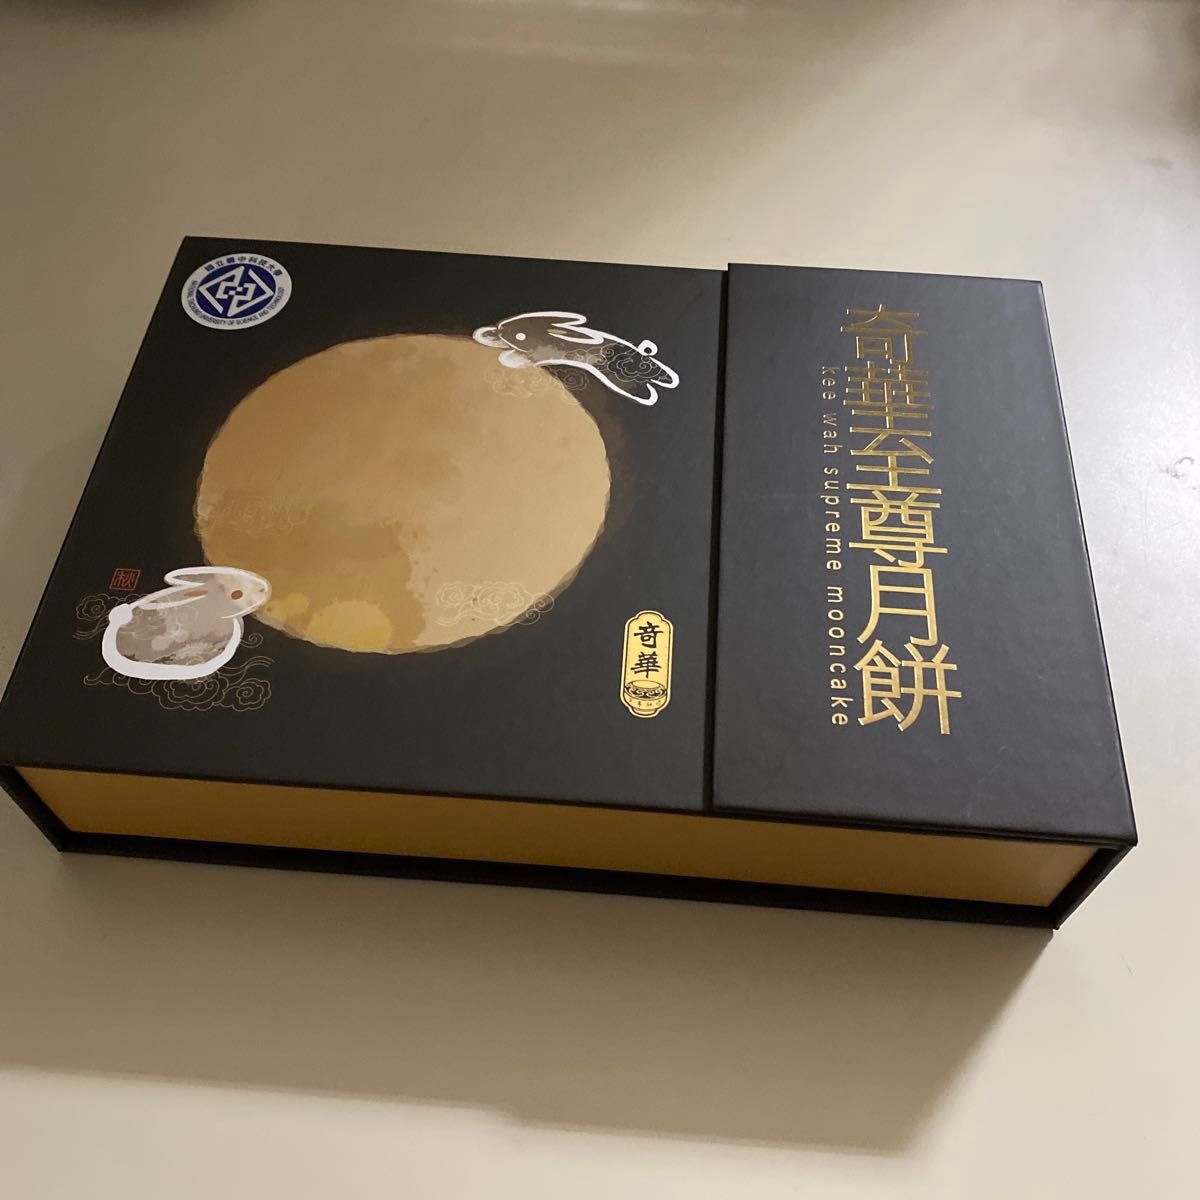 台湾で購入した月餅が入っていた空き箱